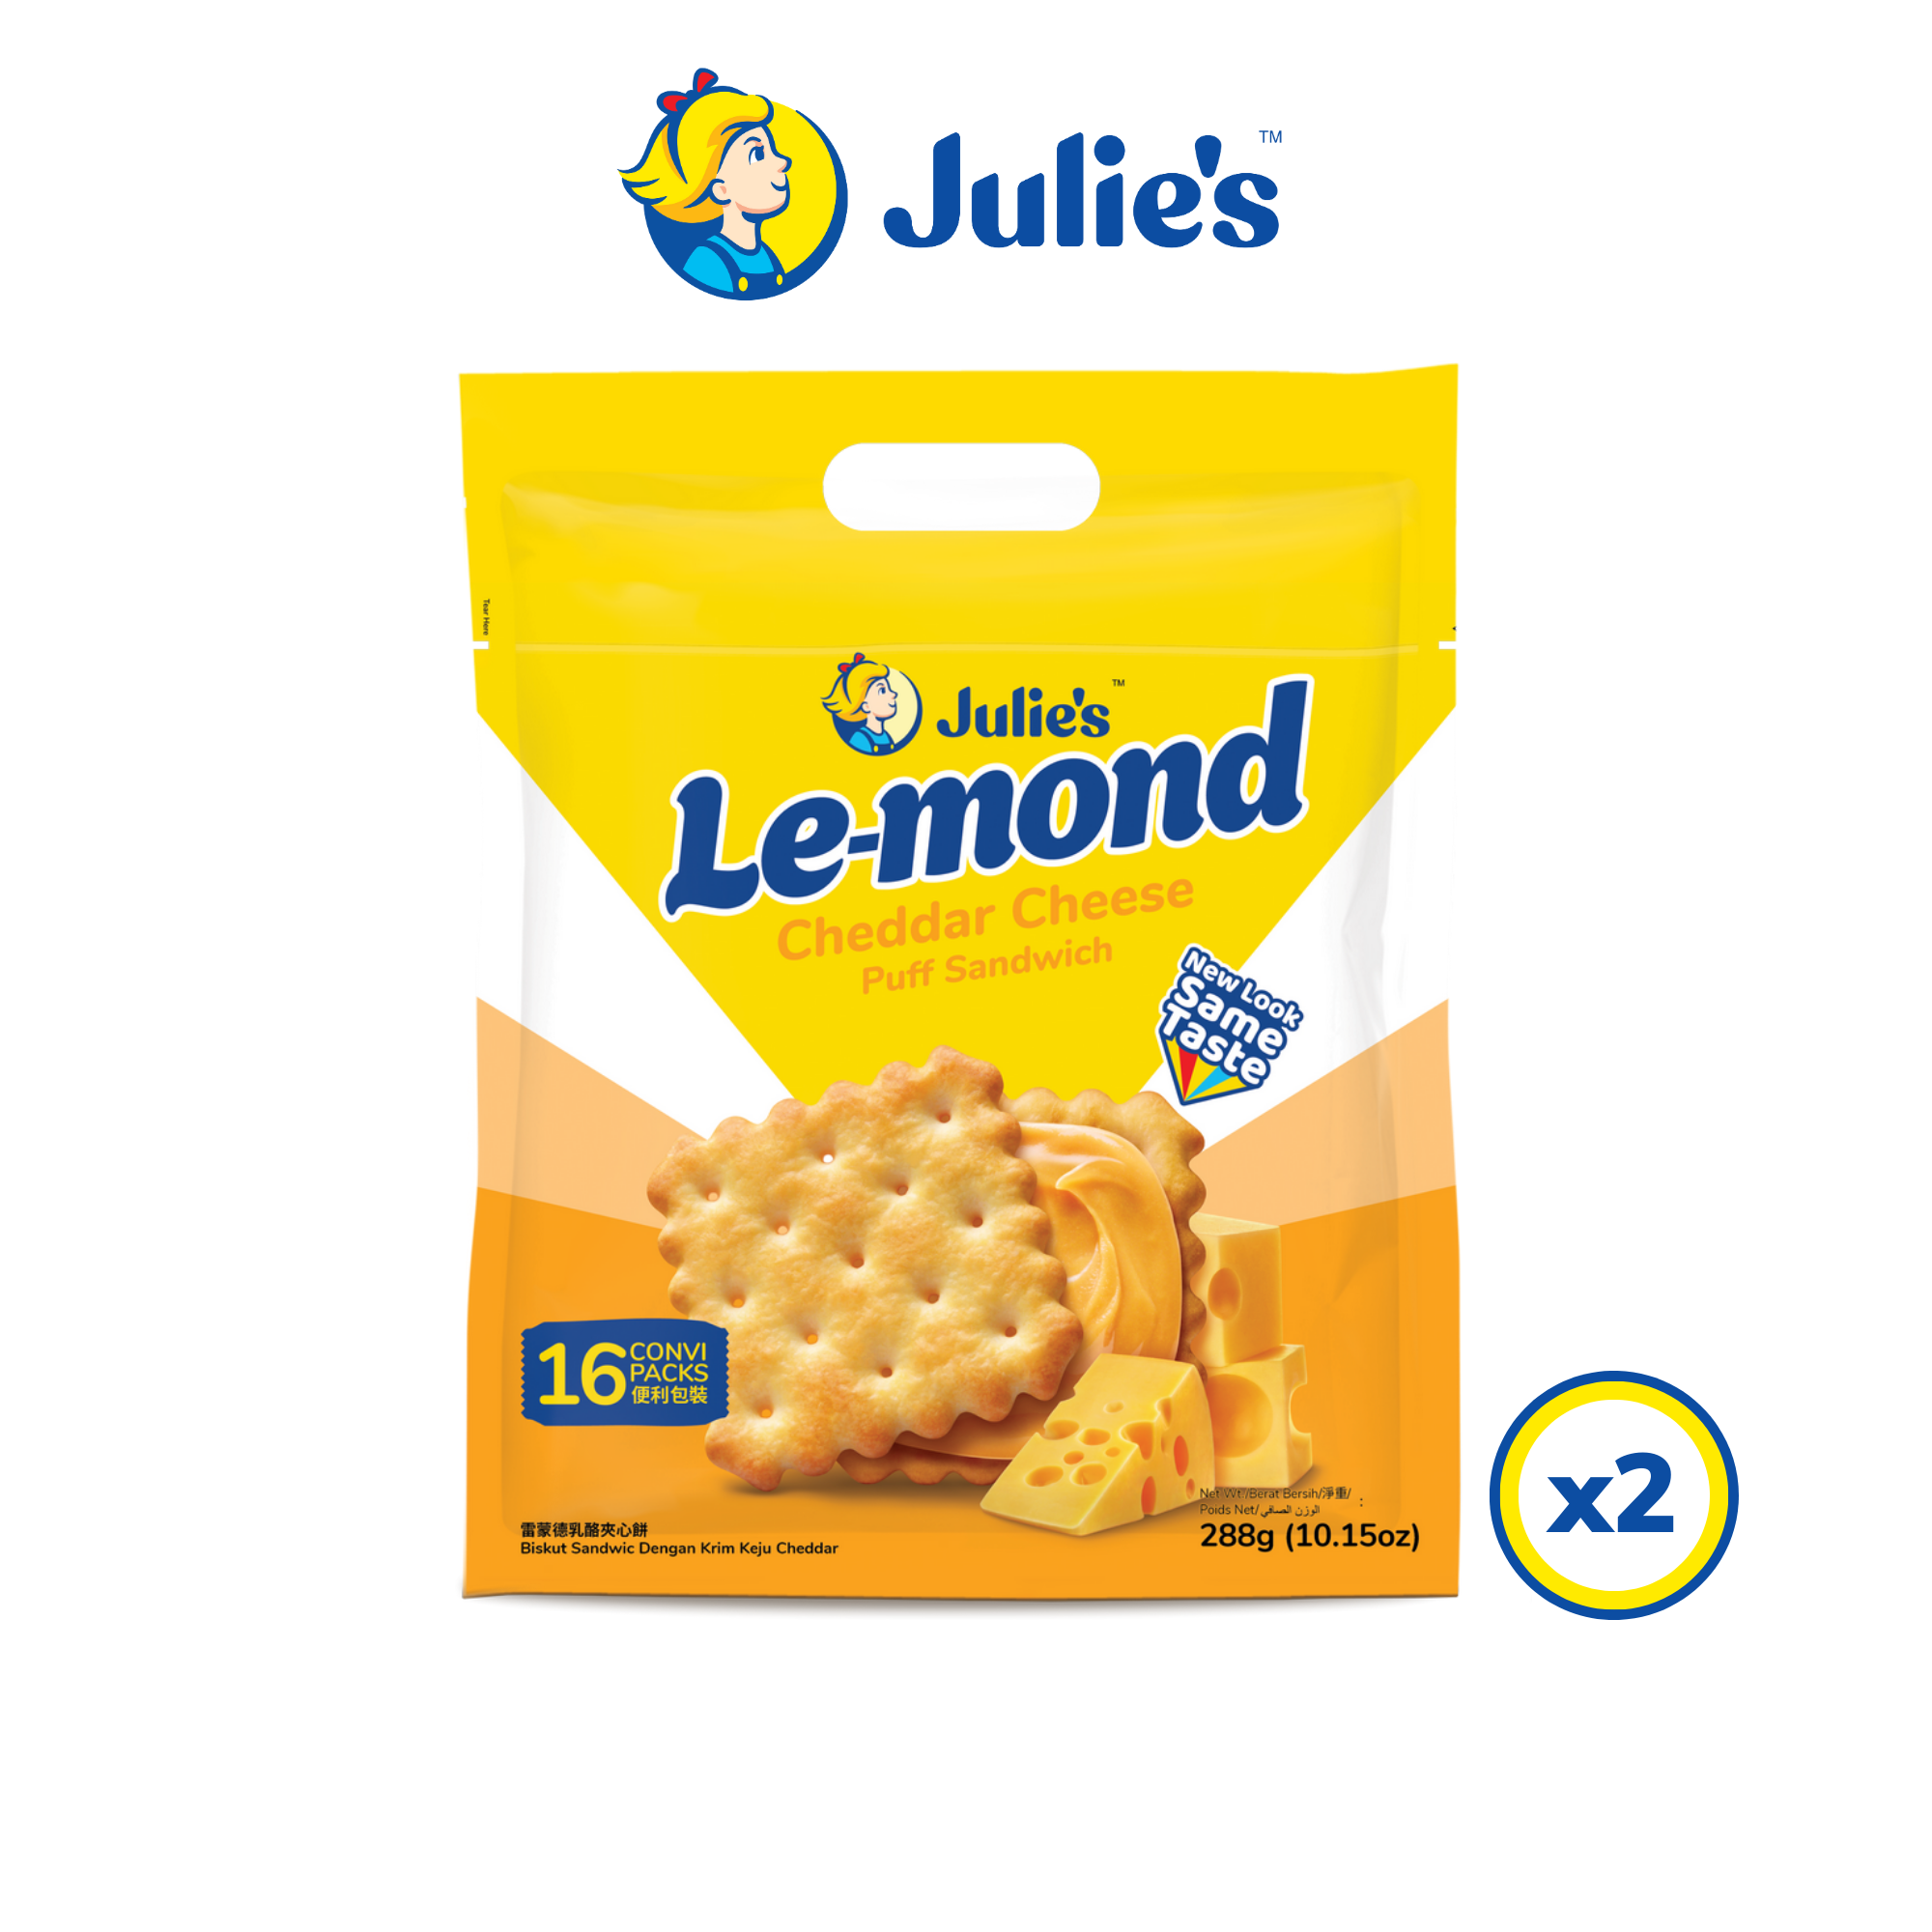 Julie's Le-mond Cheddar Cheese Puff Sandwich 288g x 2 packs